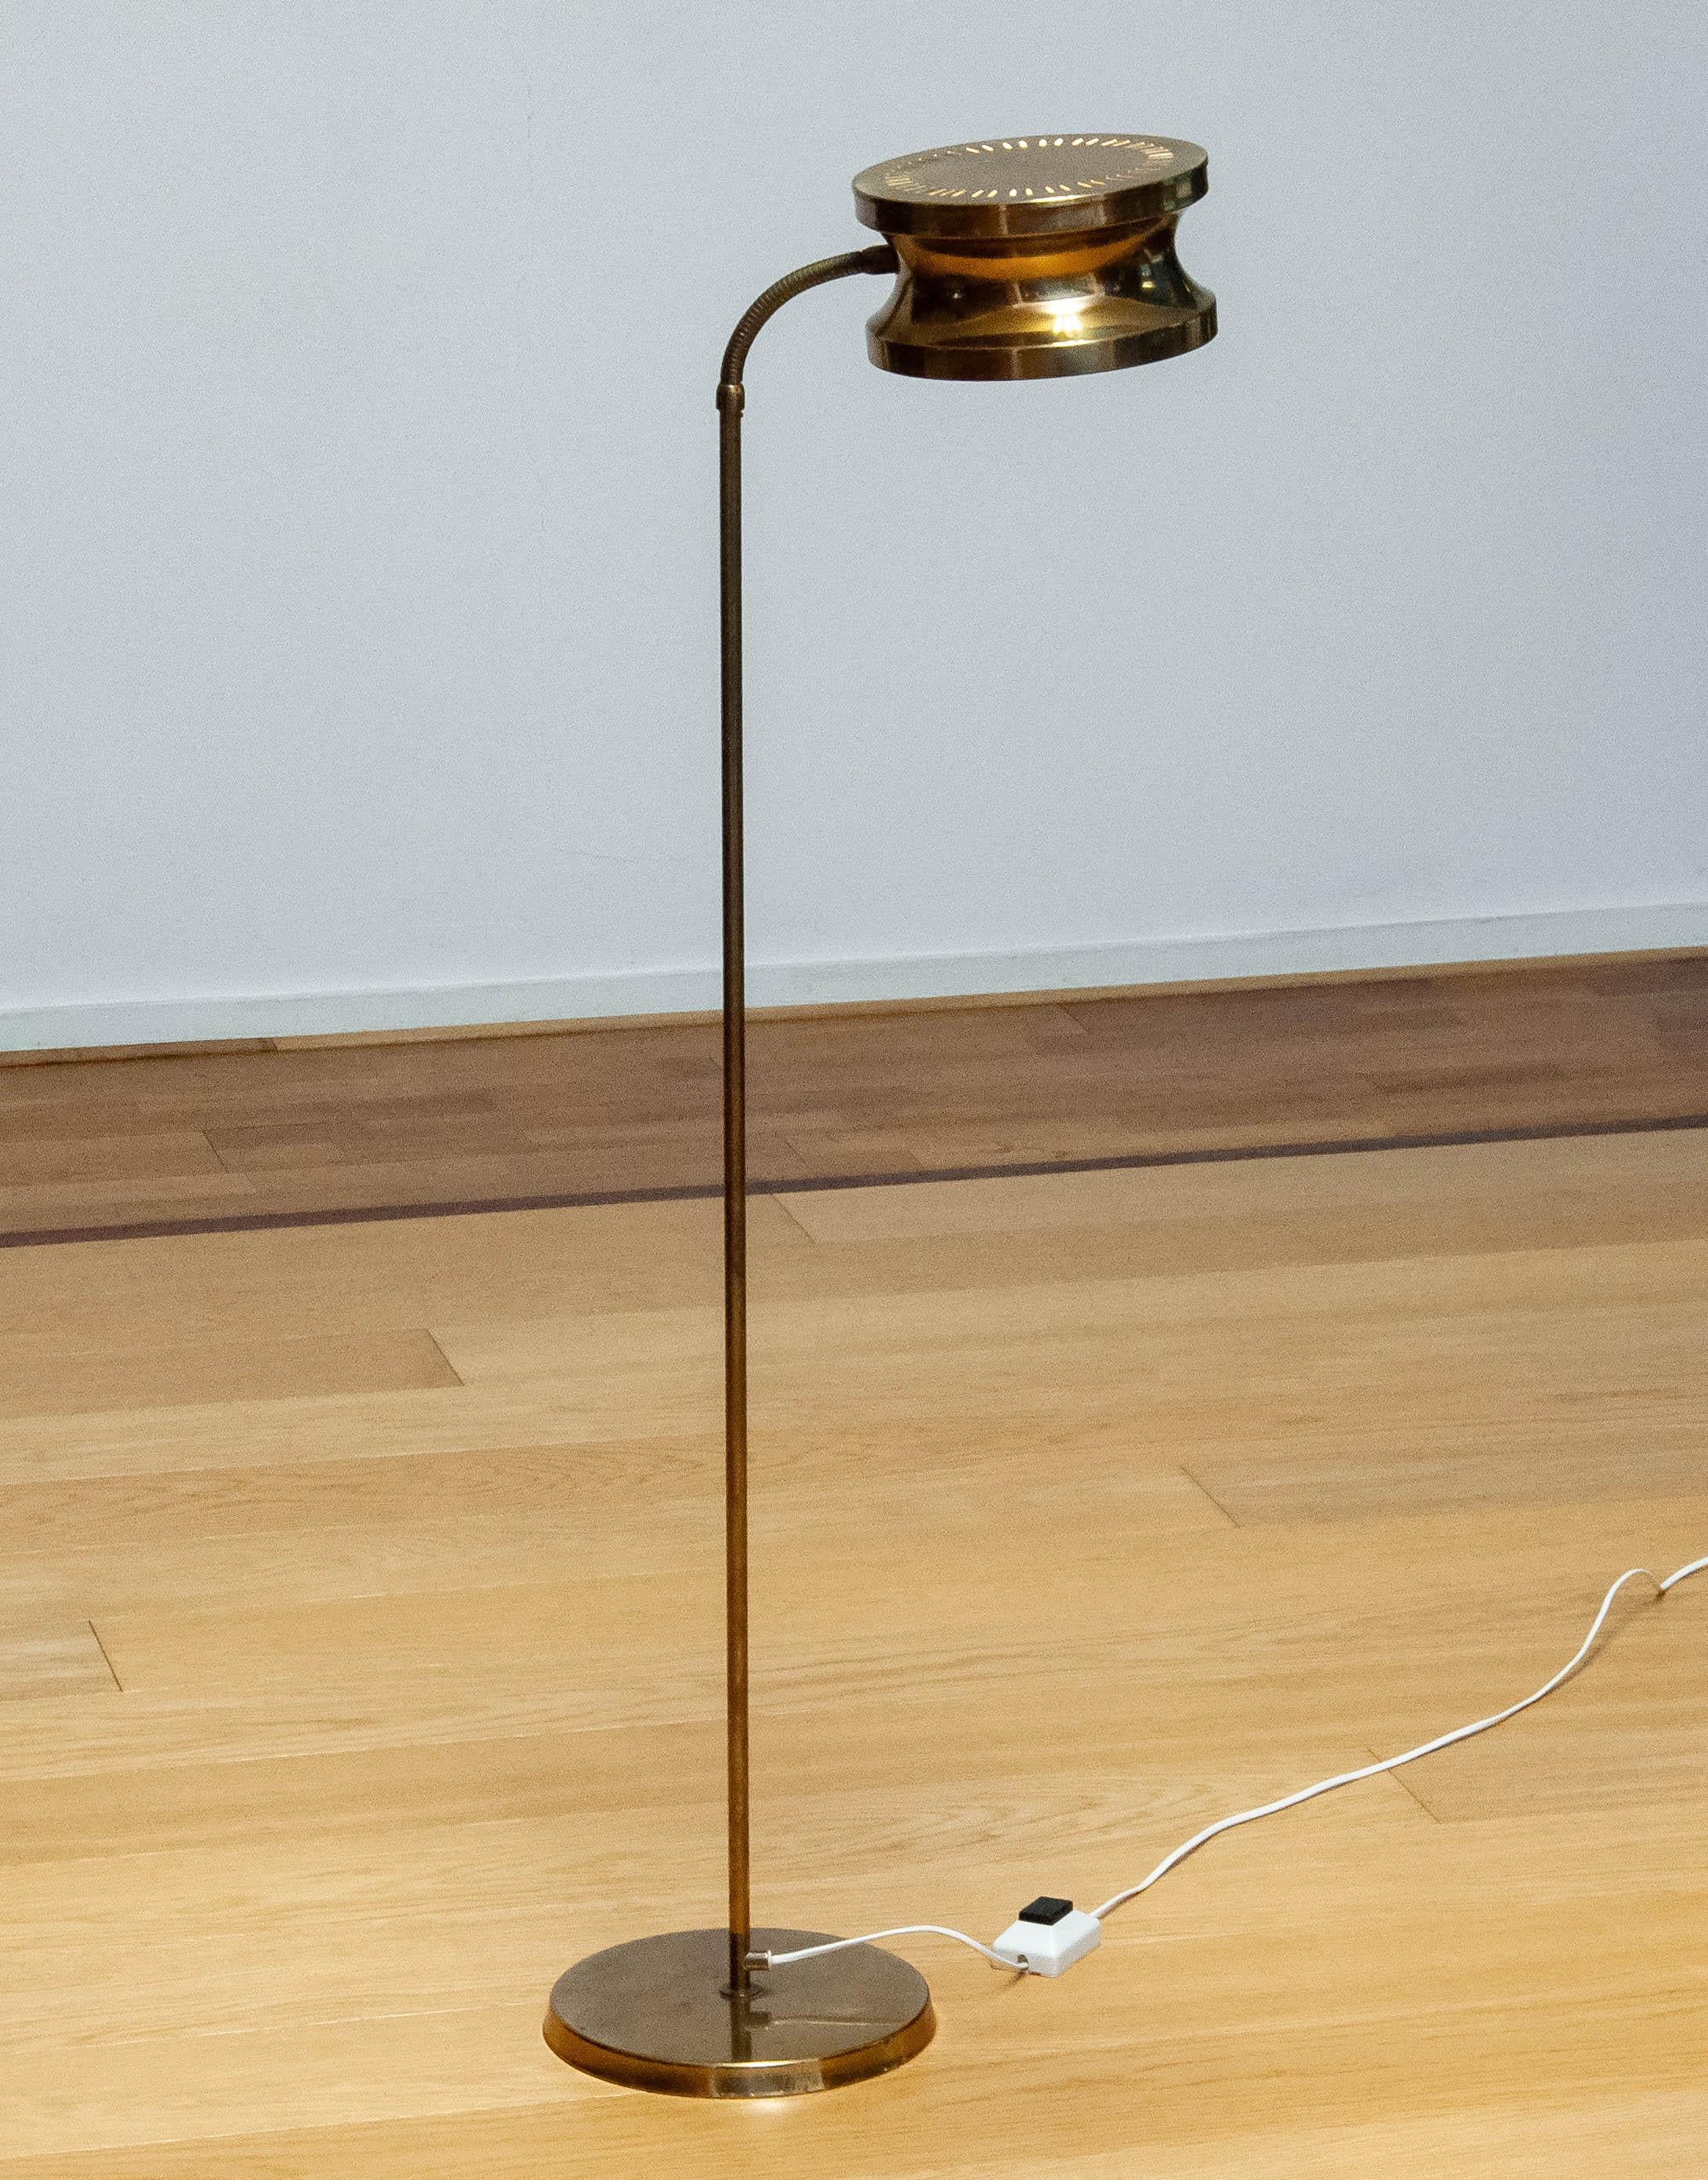 Schöne Scandinavian Modern Stehlampe in poliertem Messing, hergestellt in Schweden in den 1970er Jahren von Tyringe Konsthantverk, die in viele Interieurs passt. Nach dem Einschalten verleiht der perforierte Lampenschirm dieser Stehleuchte ihr